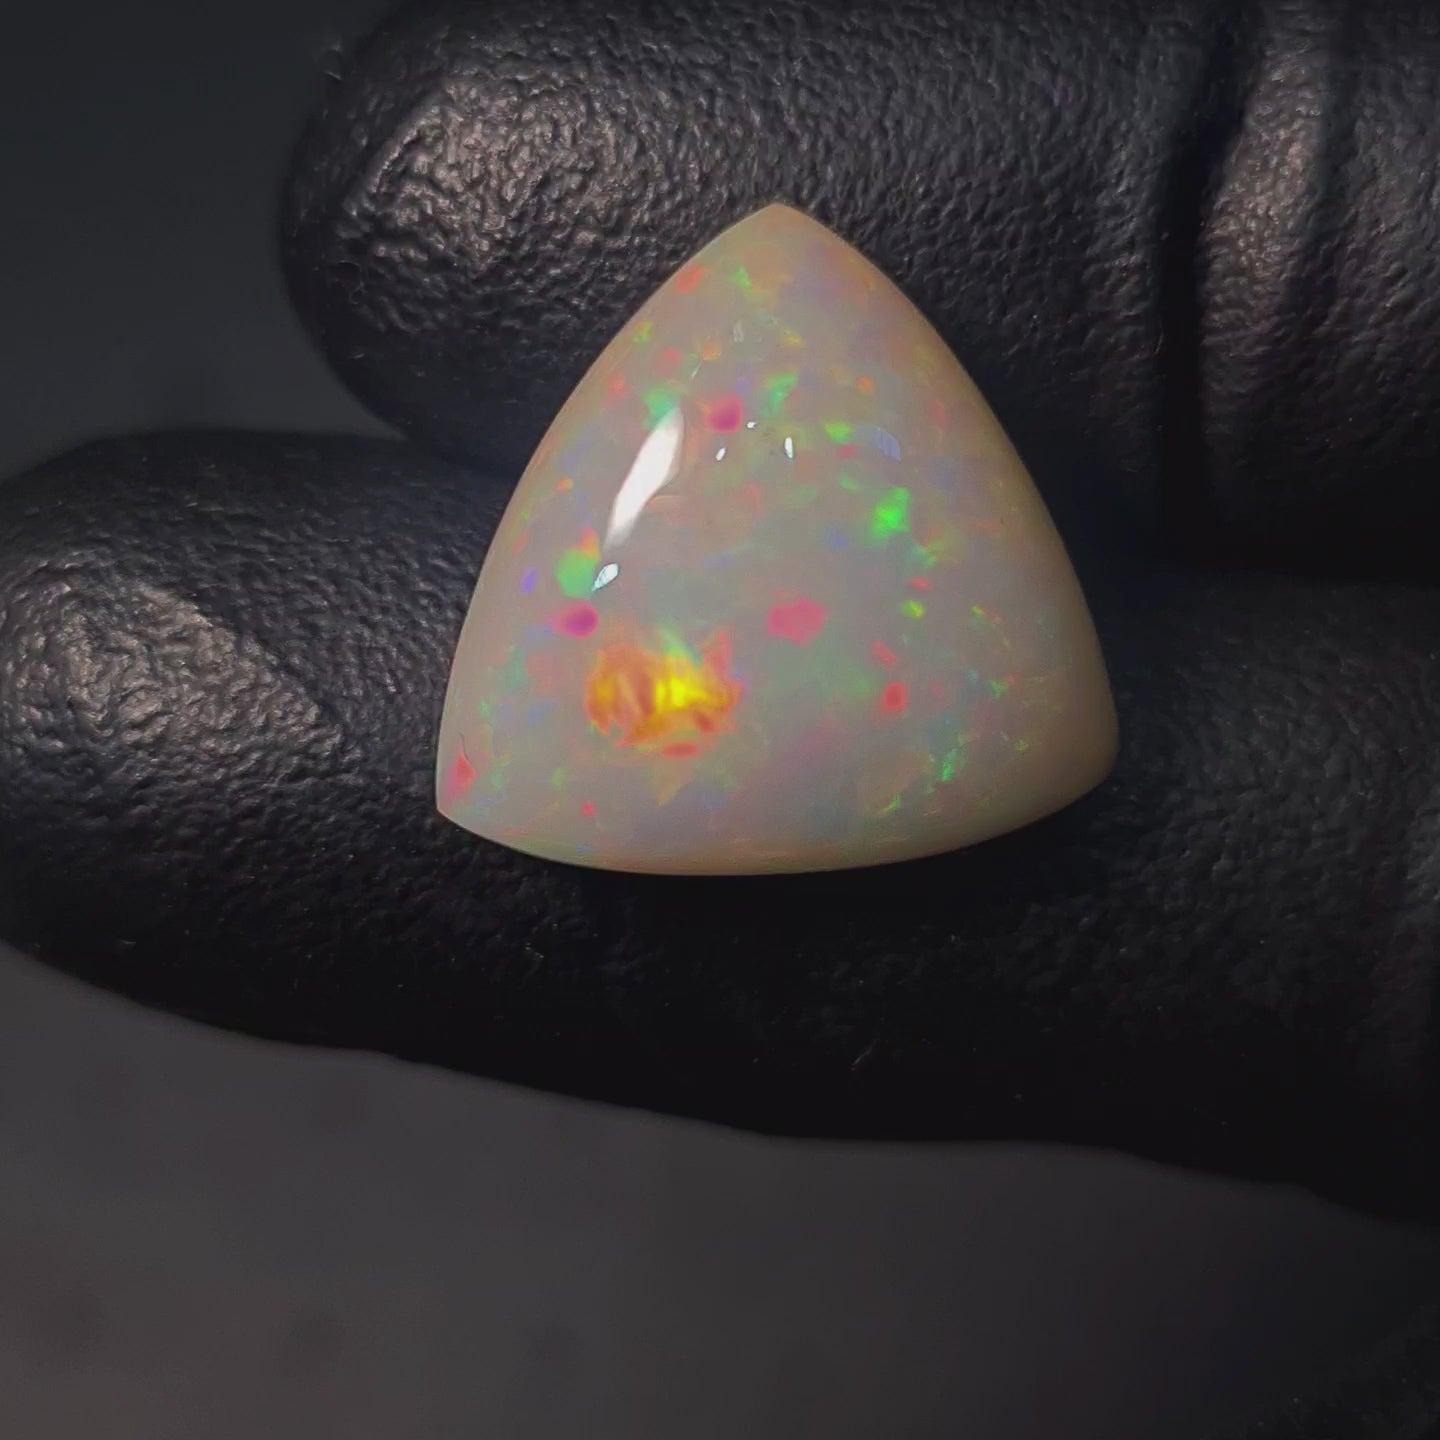 1 Pcs Of Natural Ethopian Opal Trillion Shape  |WT: 8.4 Cts|Size:17mm